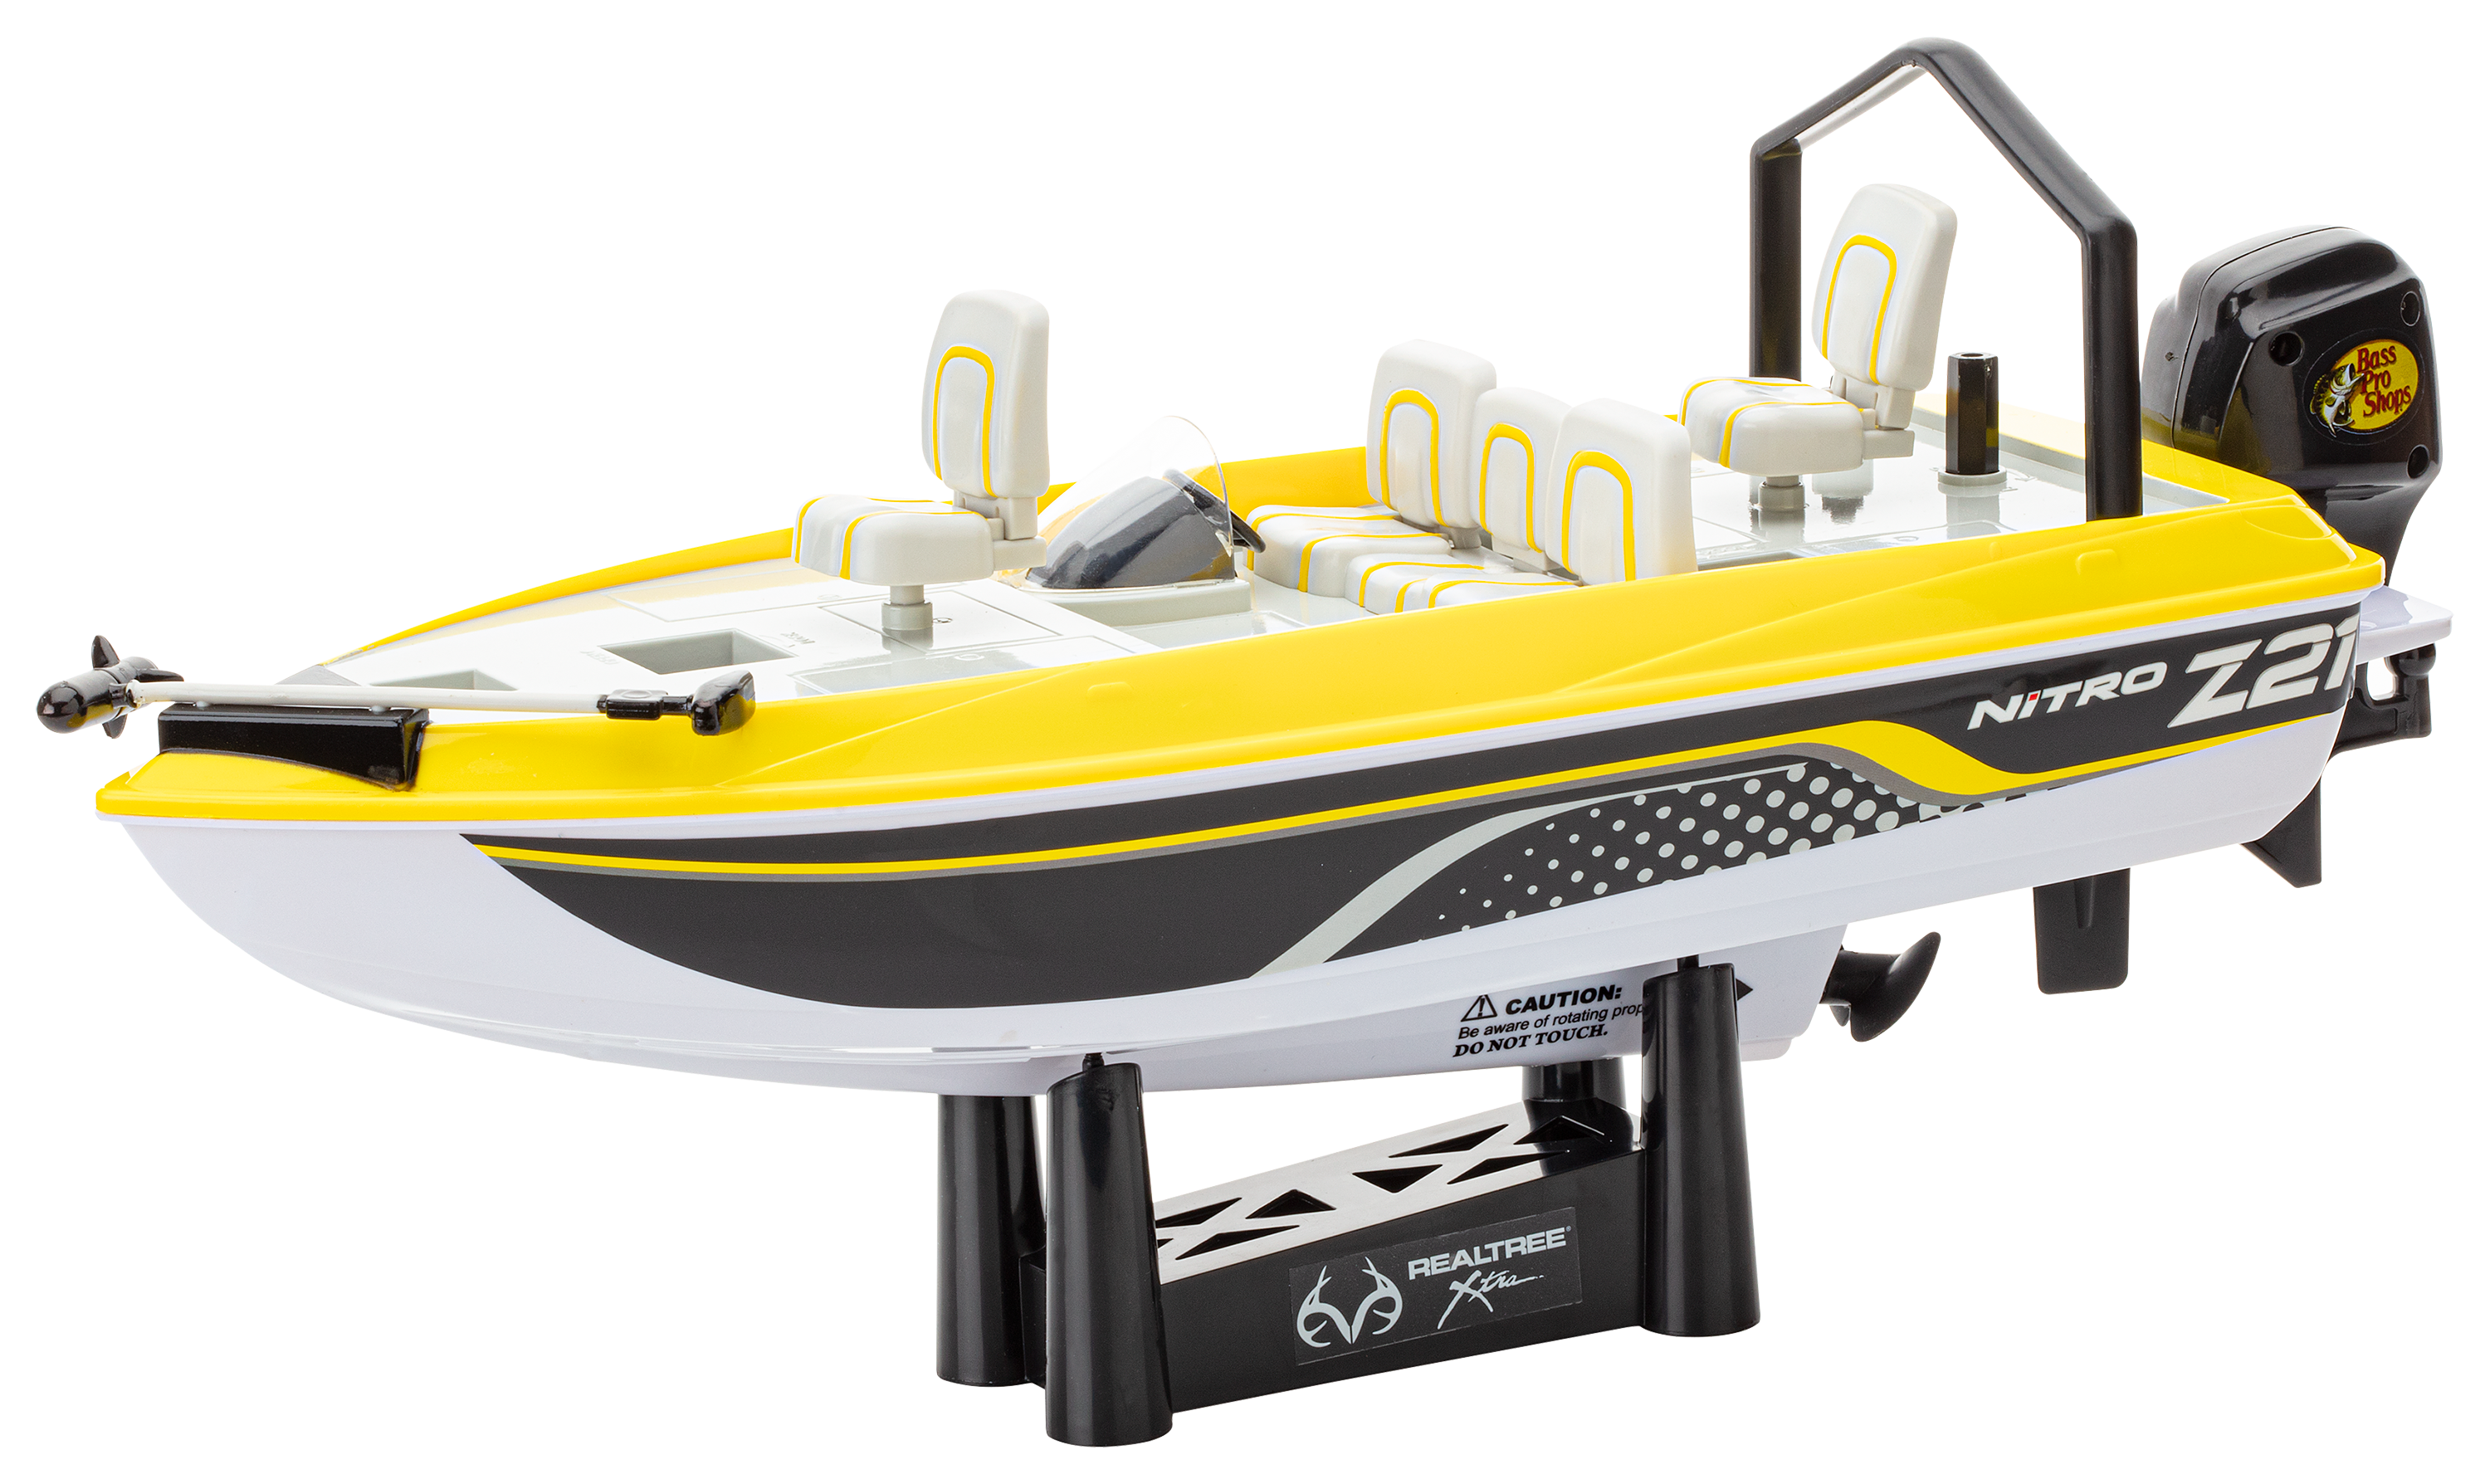 Ignite Remote Control RC Tracker Boat Bass Pro Shop B1086 New in